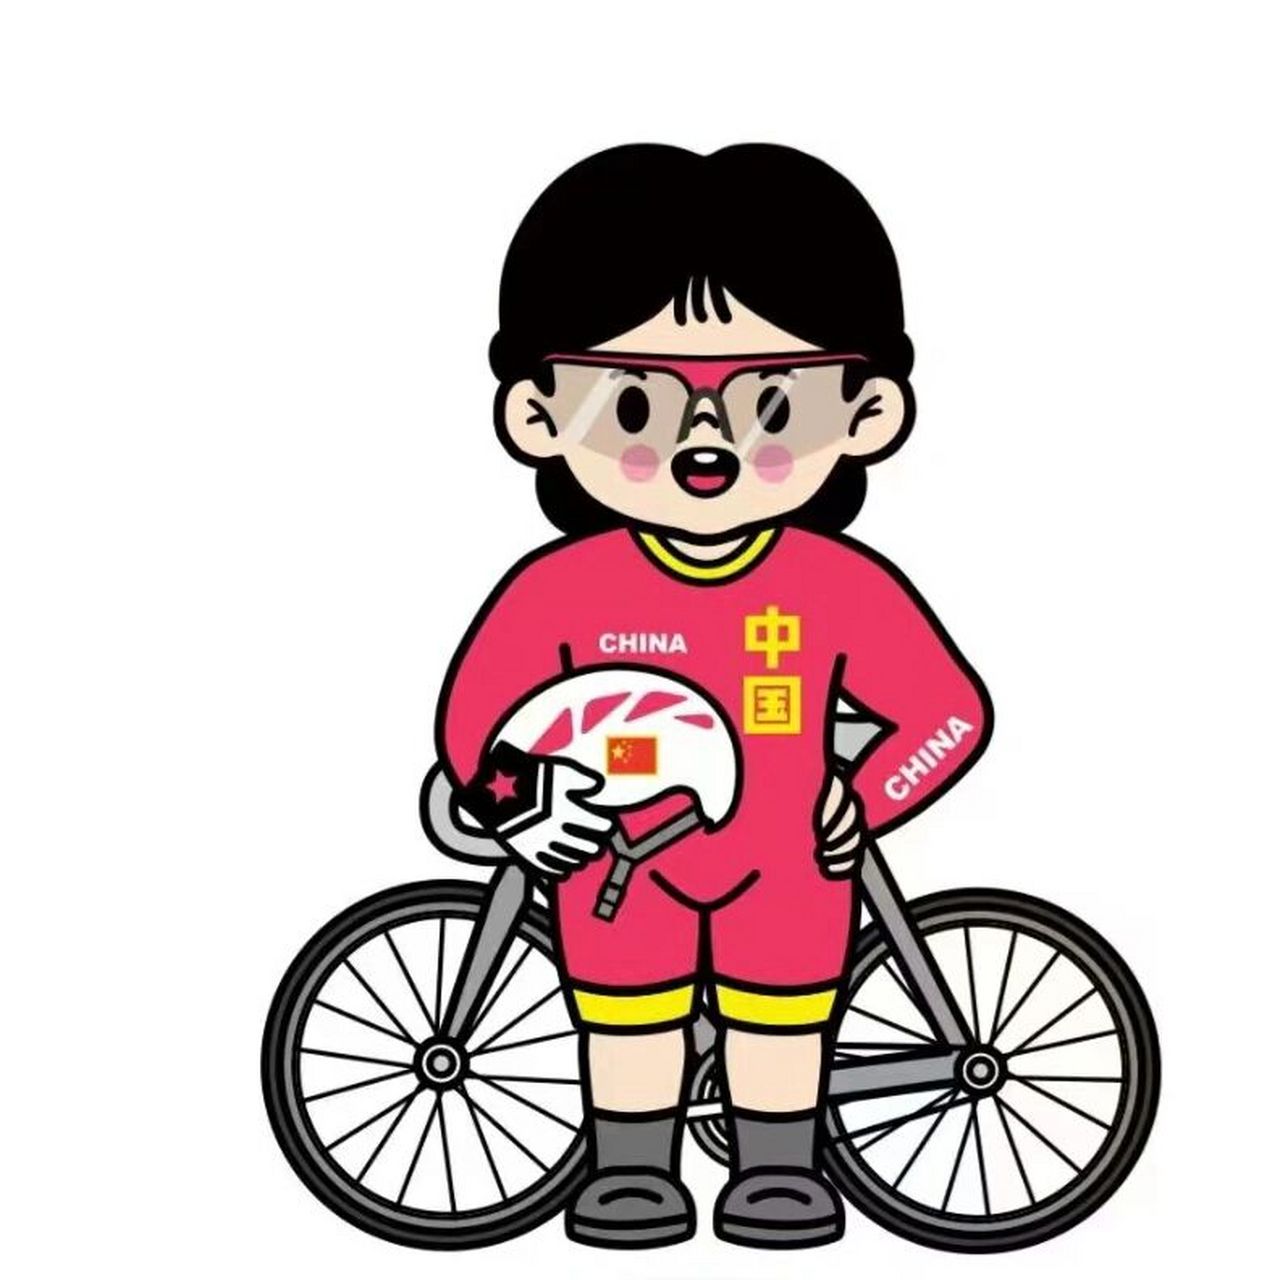 亚运会运动项目卡通画图片